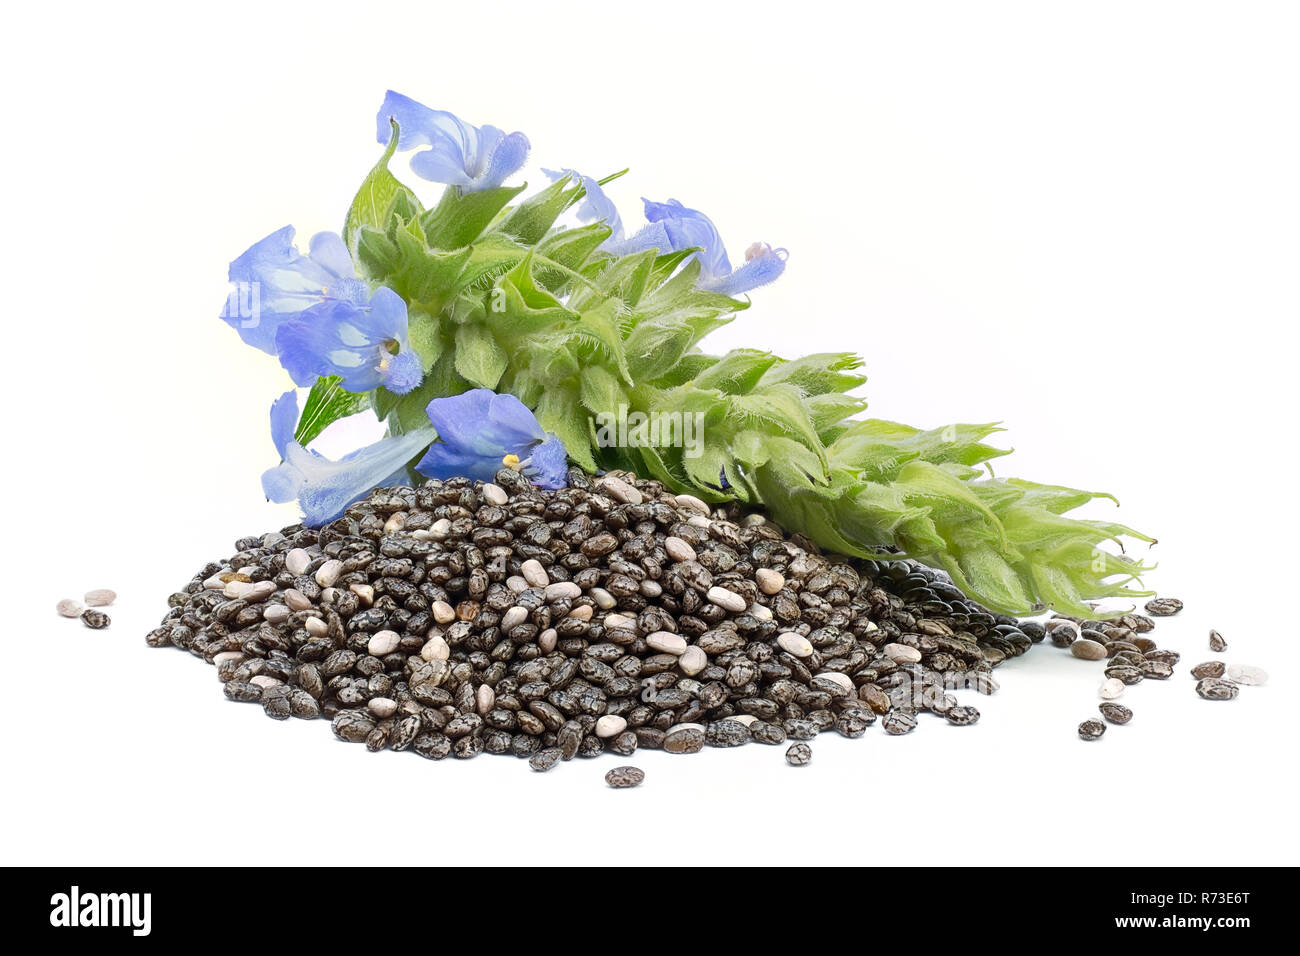 Chia (Salvia hispanica) Tas de graines de fleurs sur fond blanc Banque D'Images